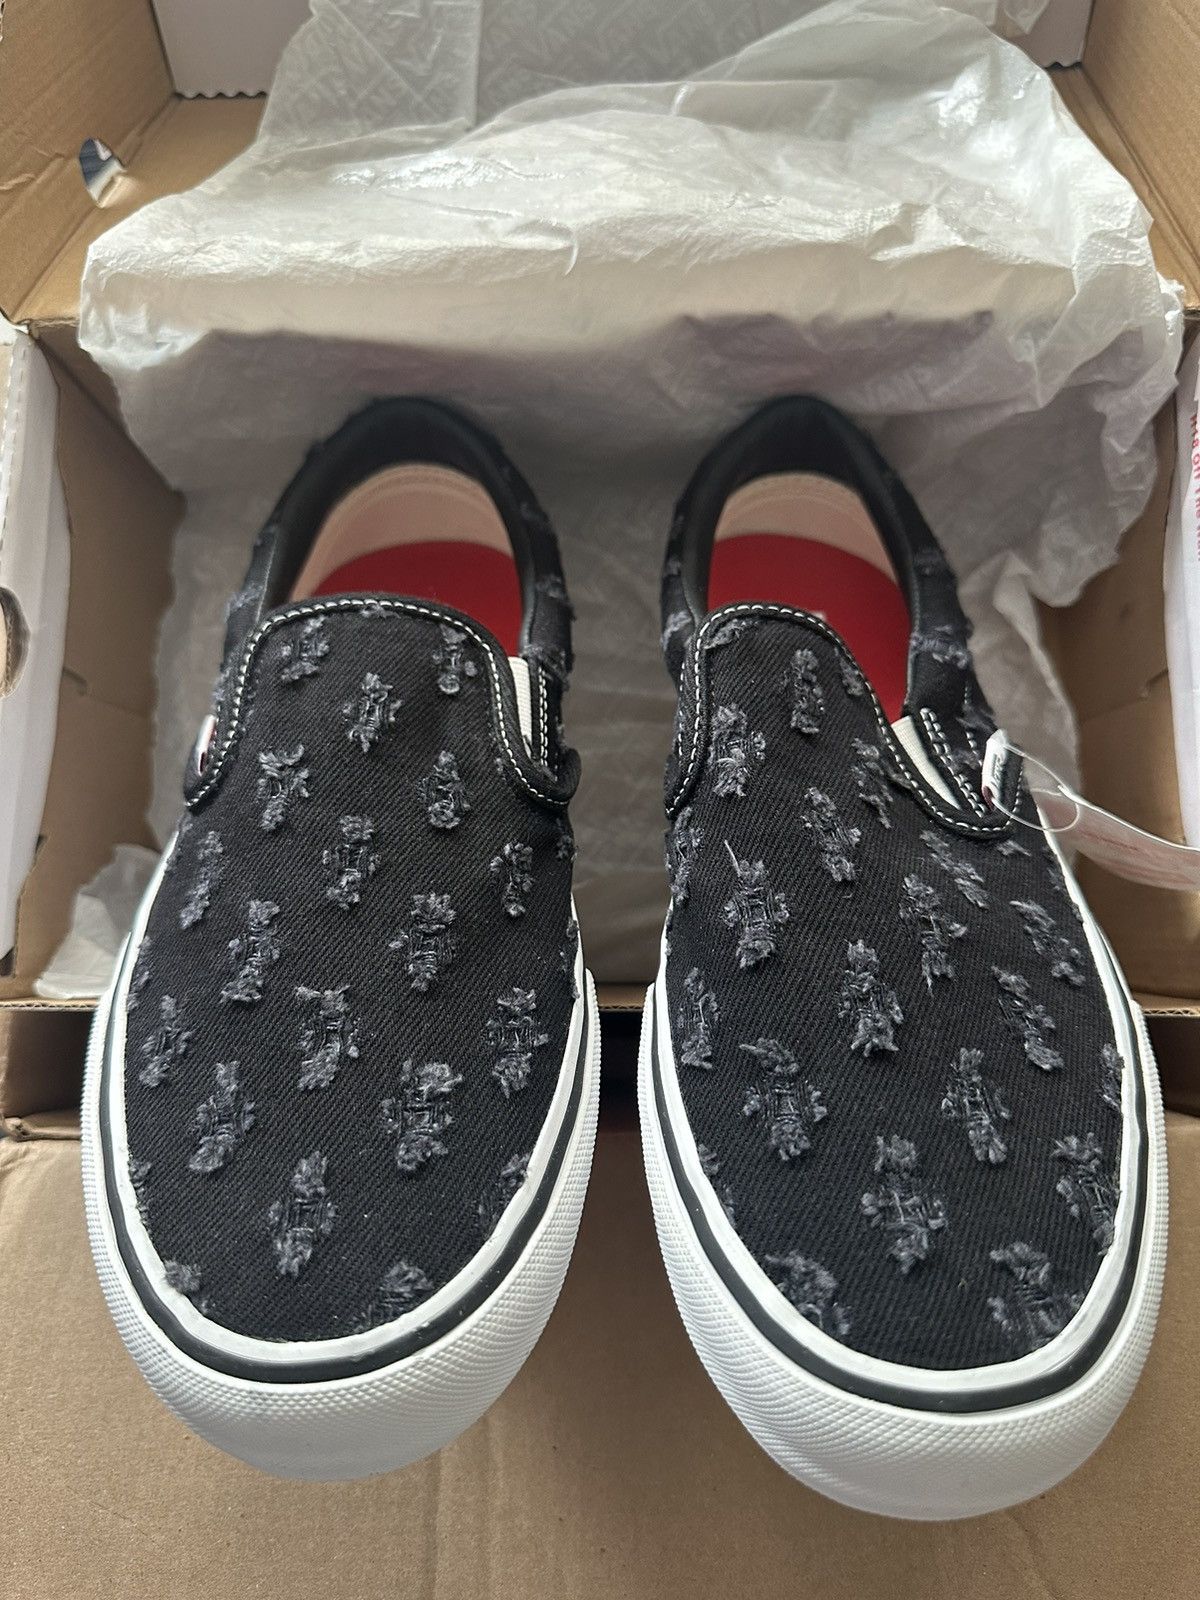 Vans Slip-On Pro 'Supreme - Black Hole Punch Denim' Shoes - Size 9